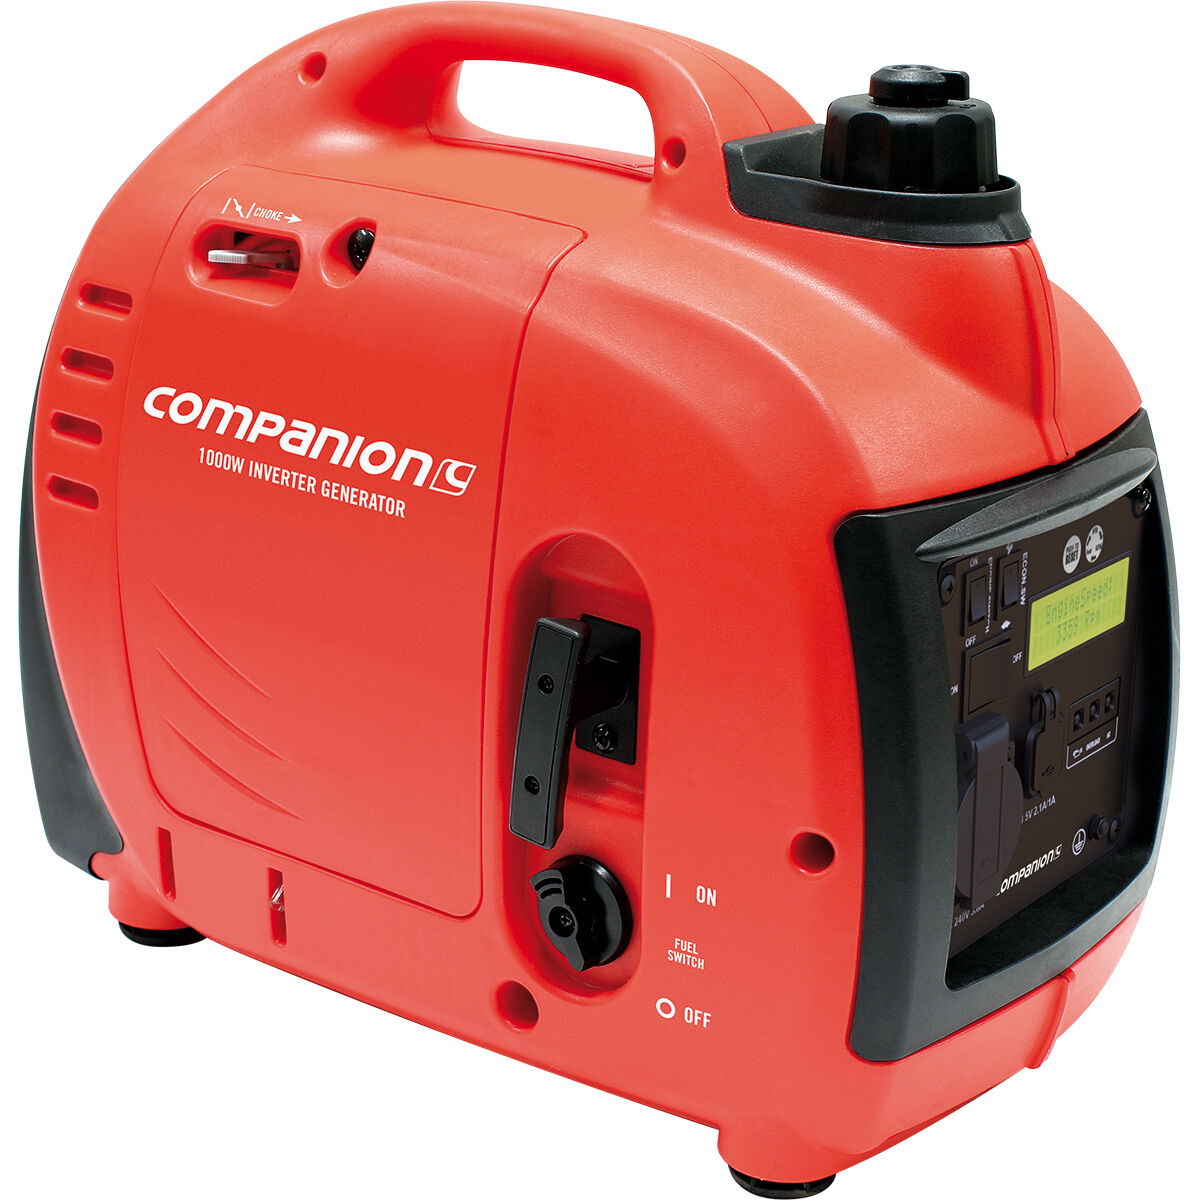 Companion 1000W Inverter Generator | BCF